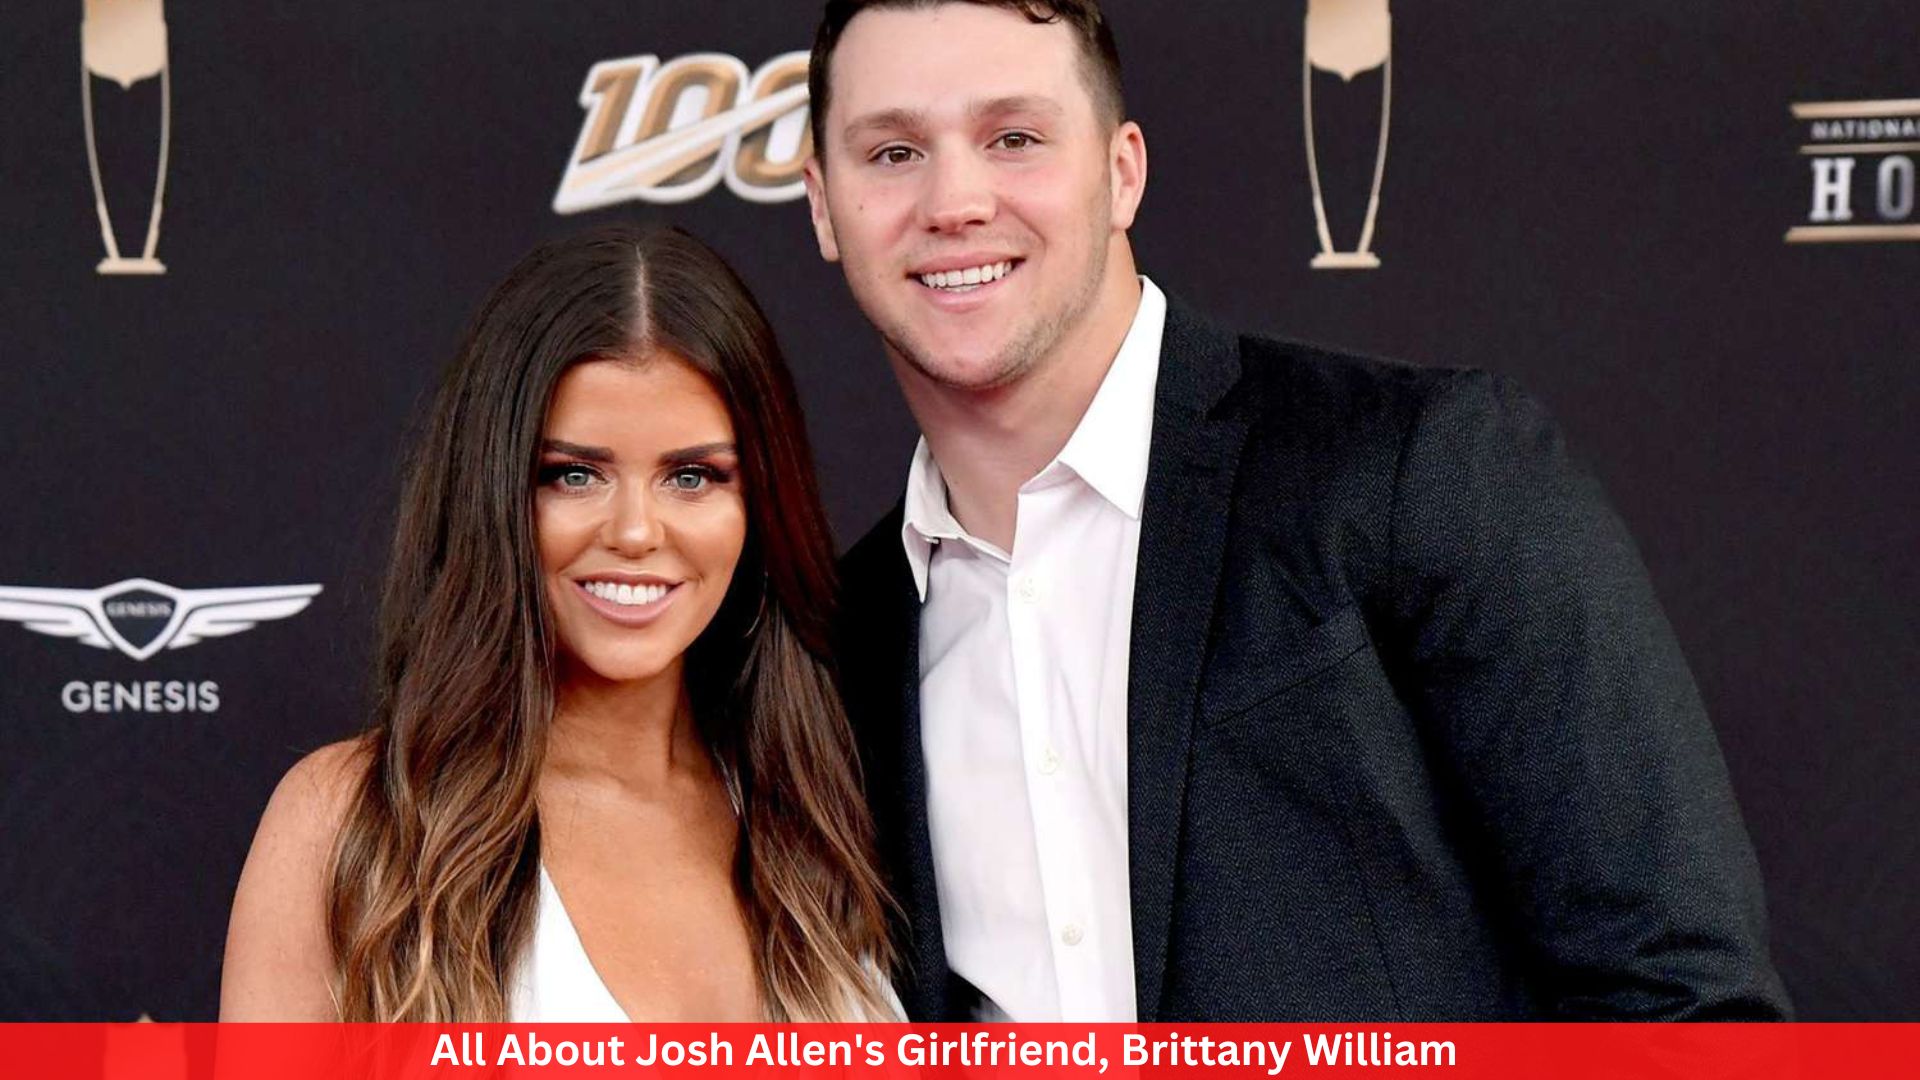 All About Josh Allen's Girlfriend, Brittany William